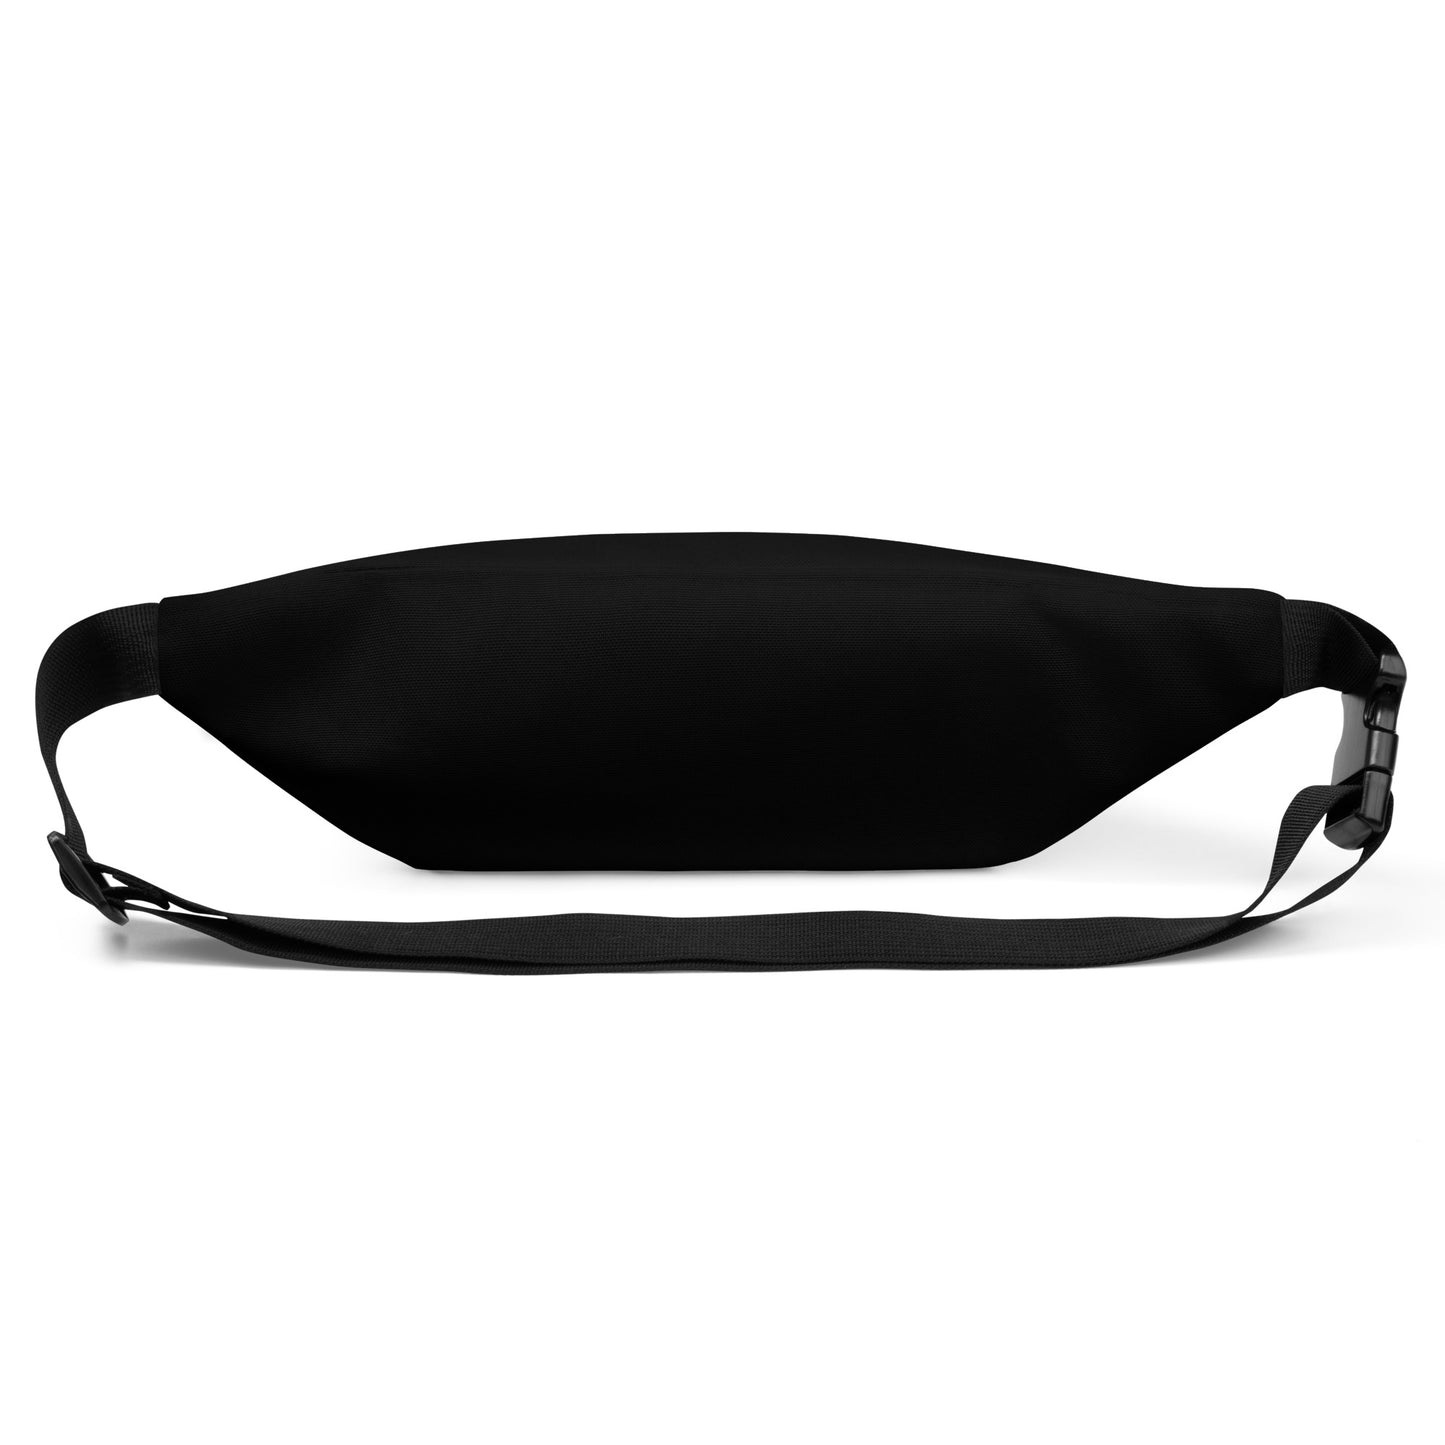 Pisces Belt Bag (Black)